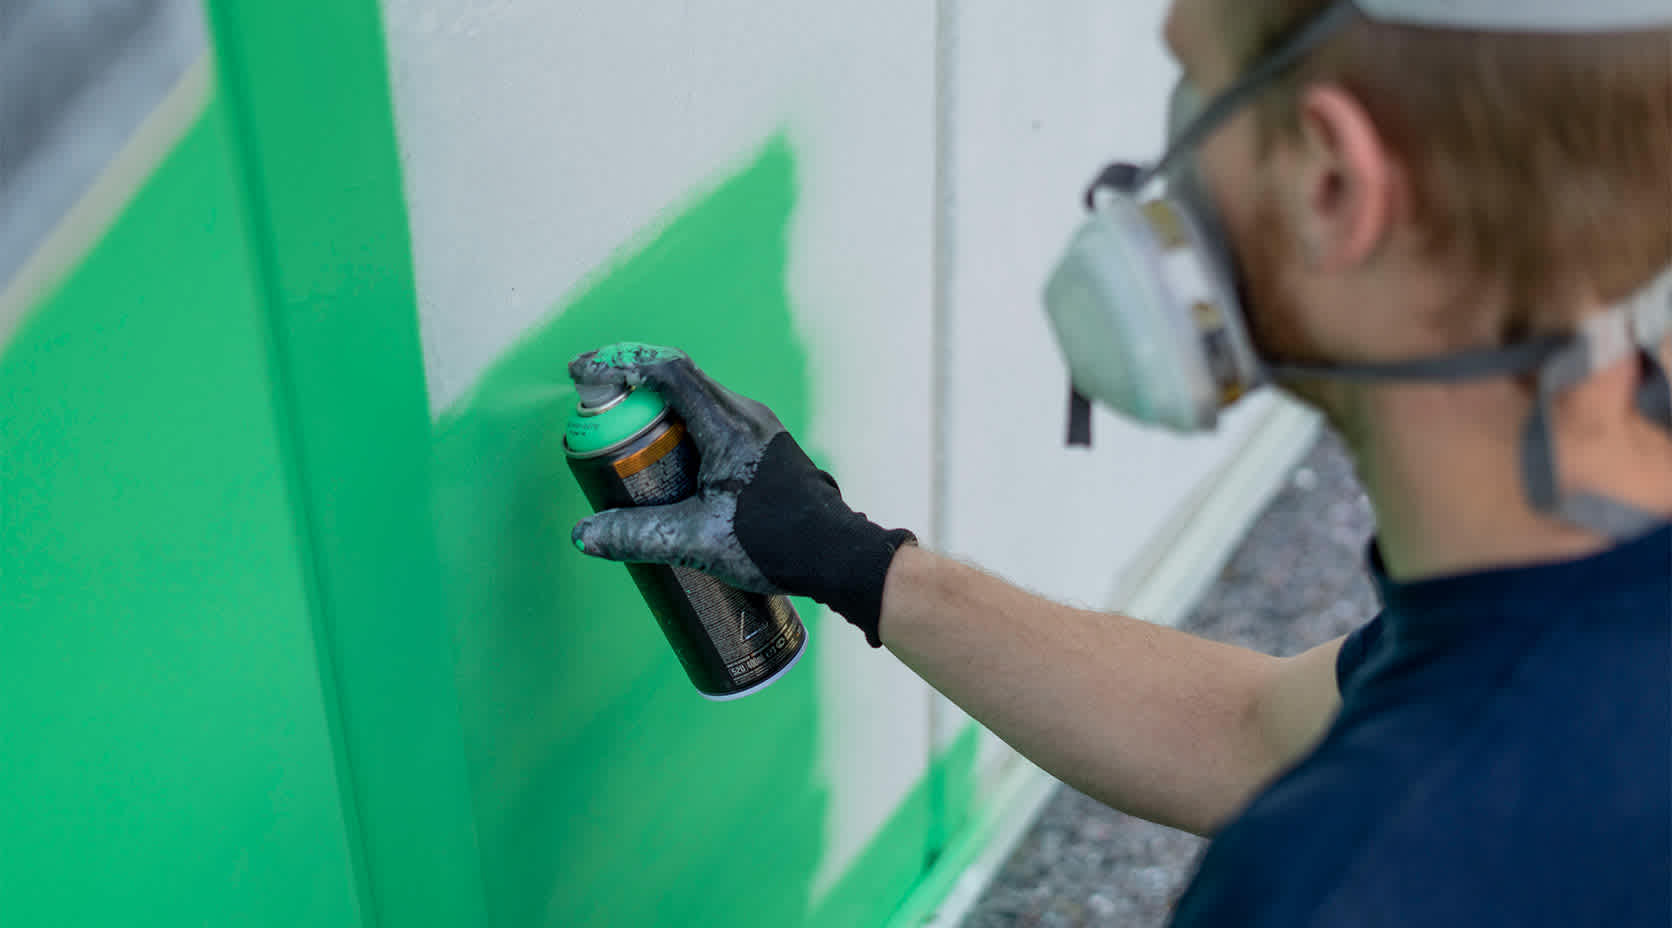 Künstler Poldy sprüht die Fassade der EVBZ grün ein